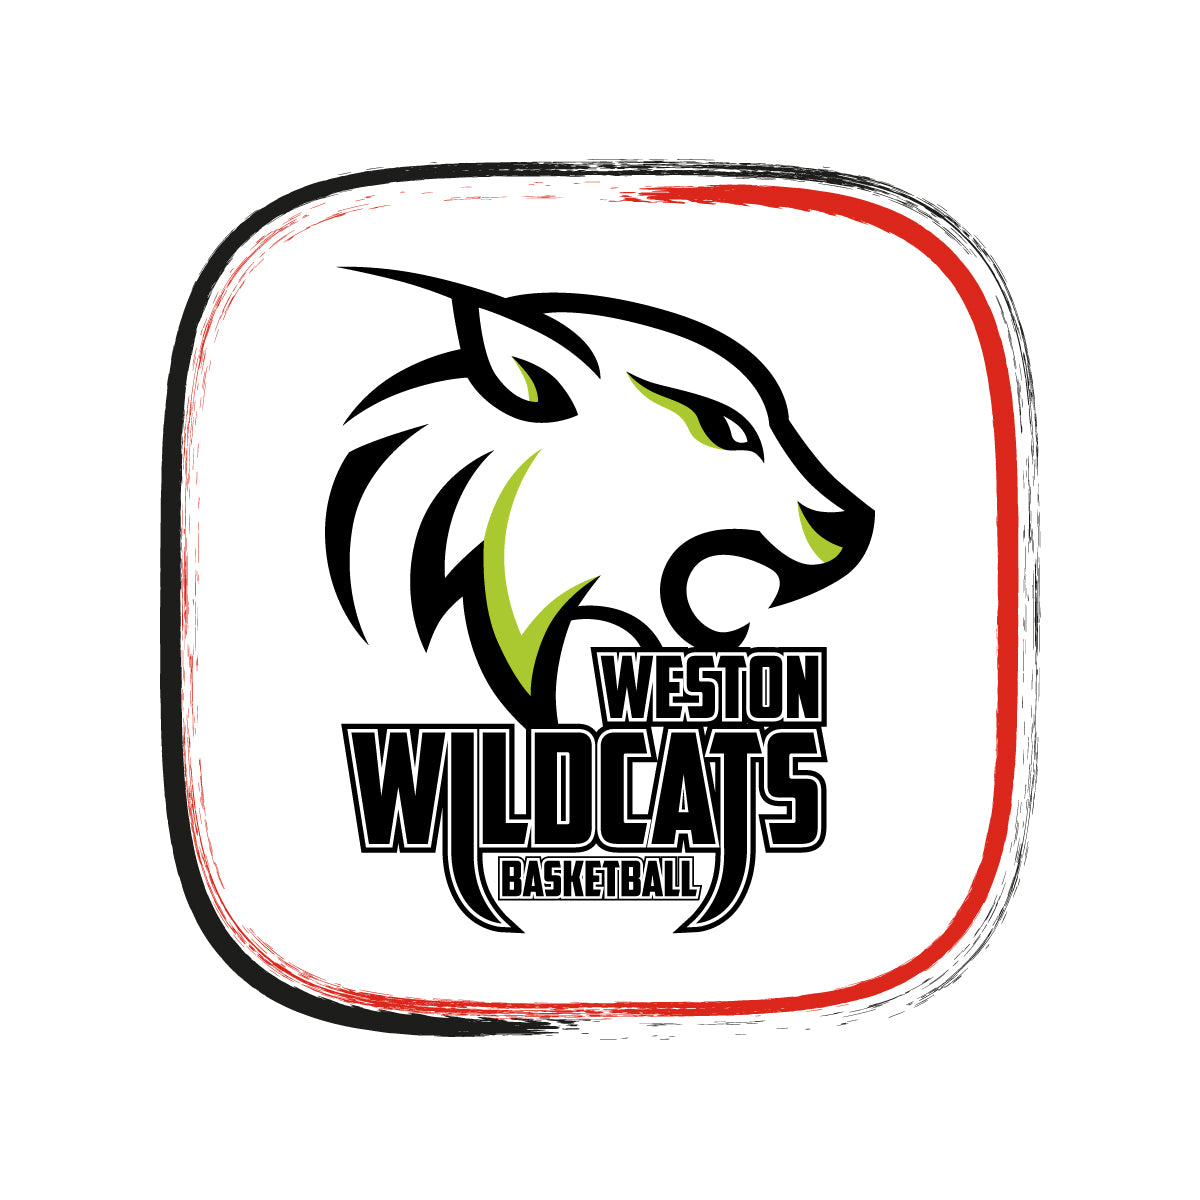 Weston Wildcats